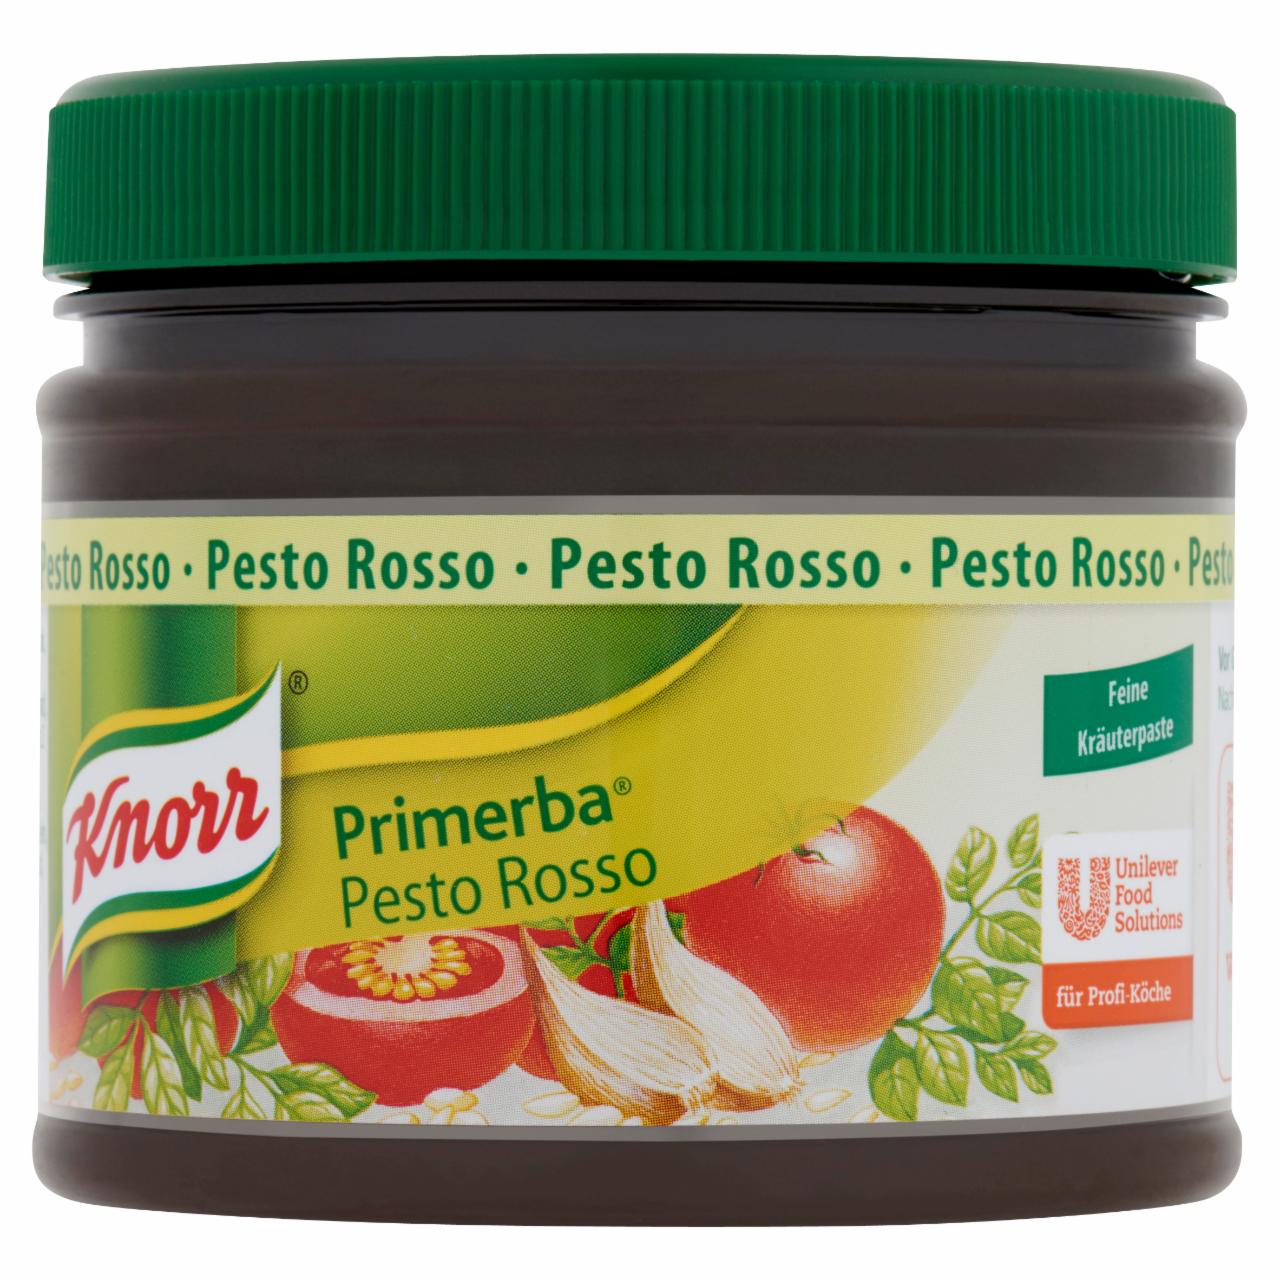 Képek - Knorr Primerba vörös pesto fűszerkeverék növényi olajban 340 g